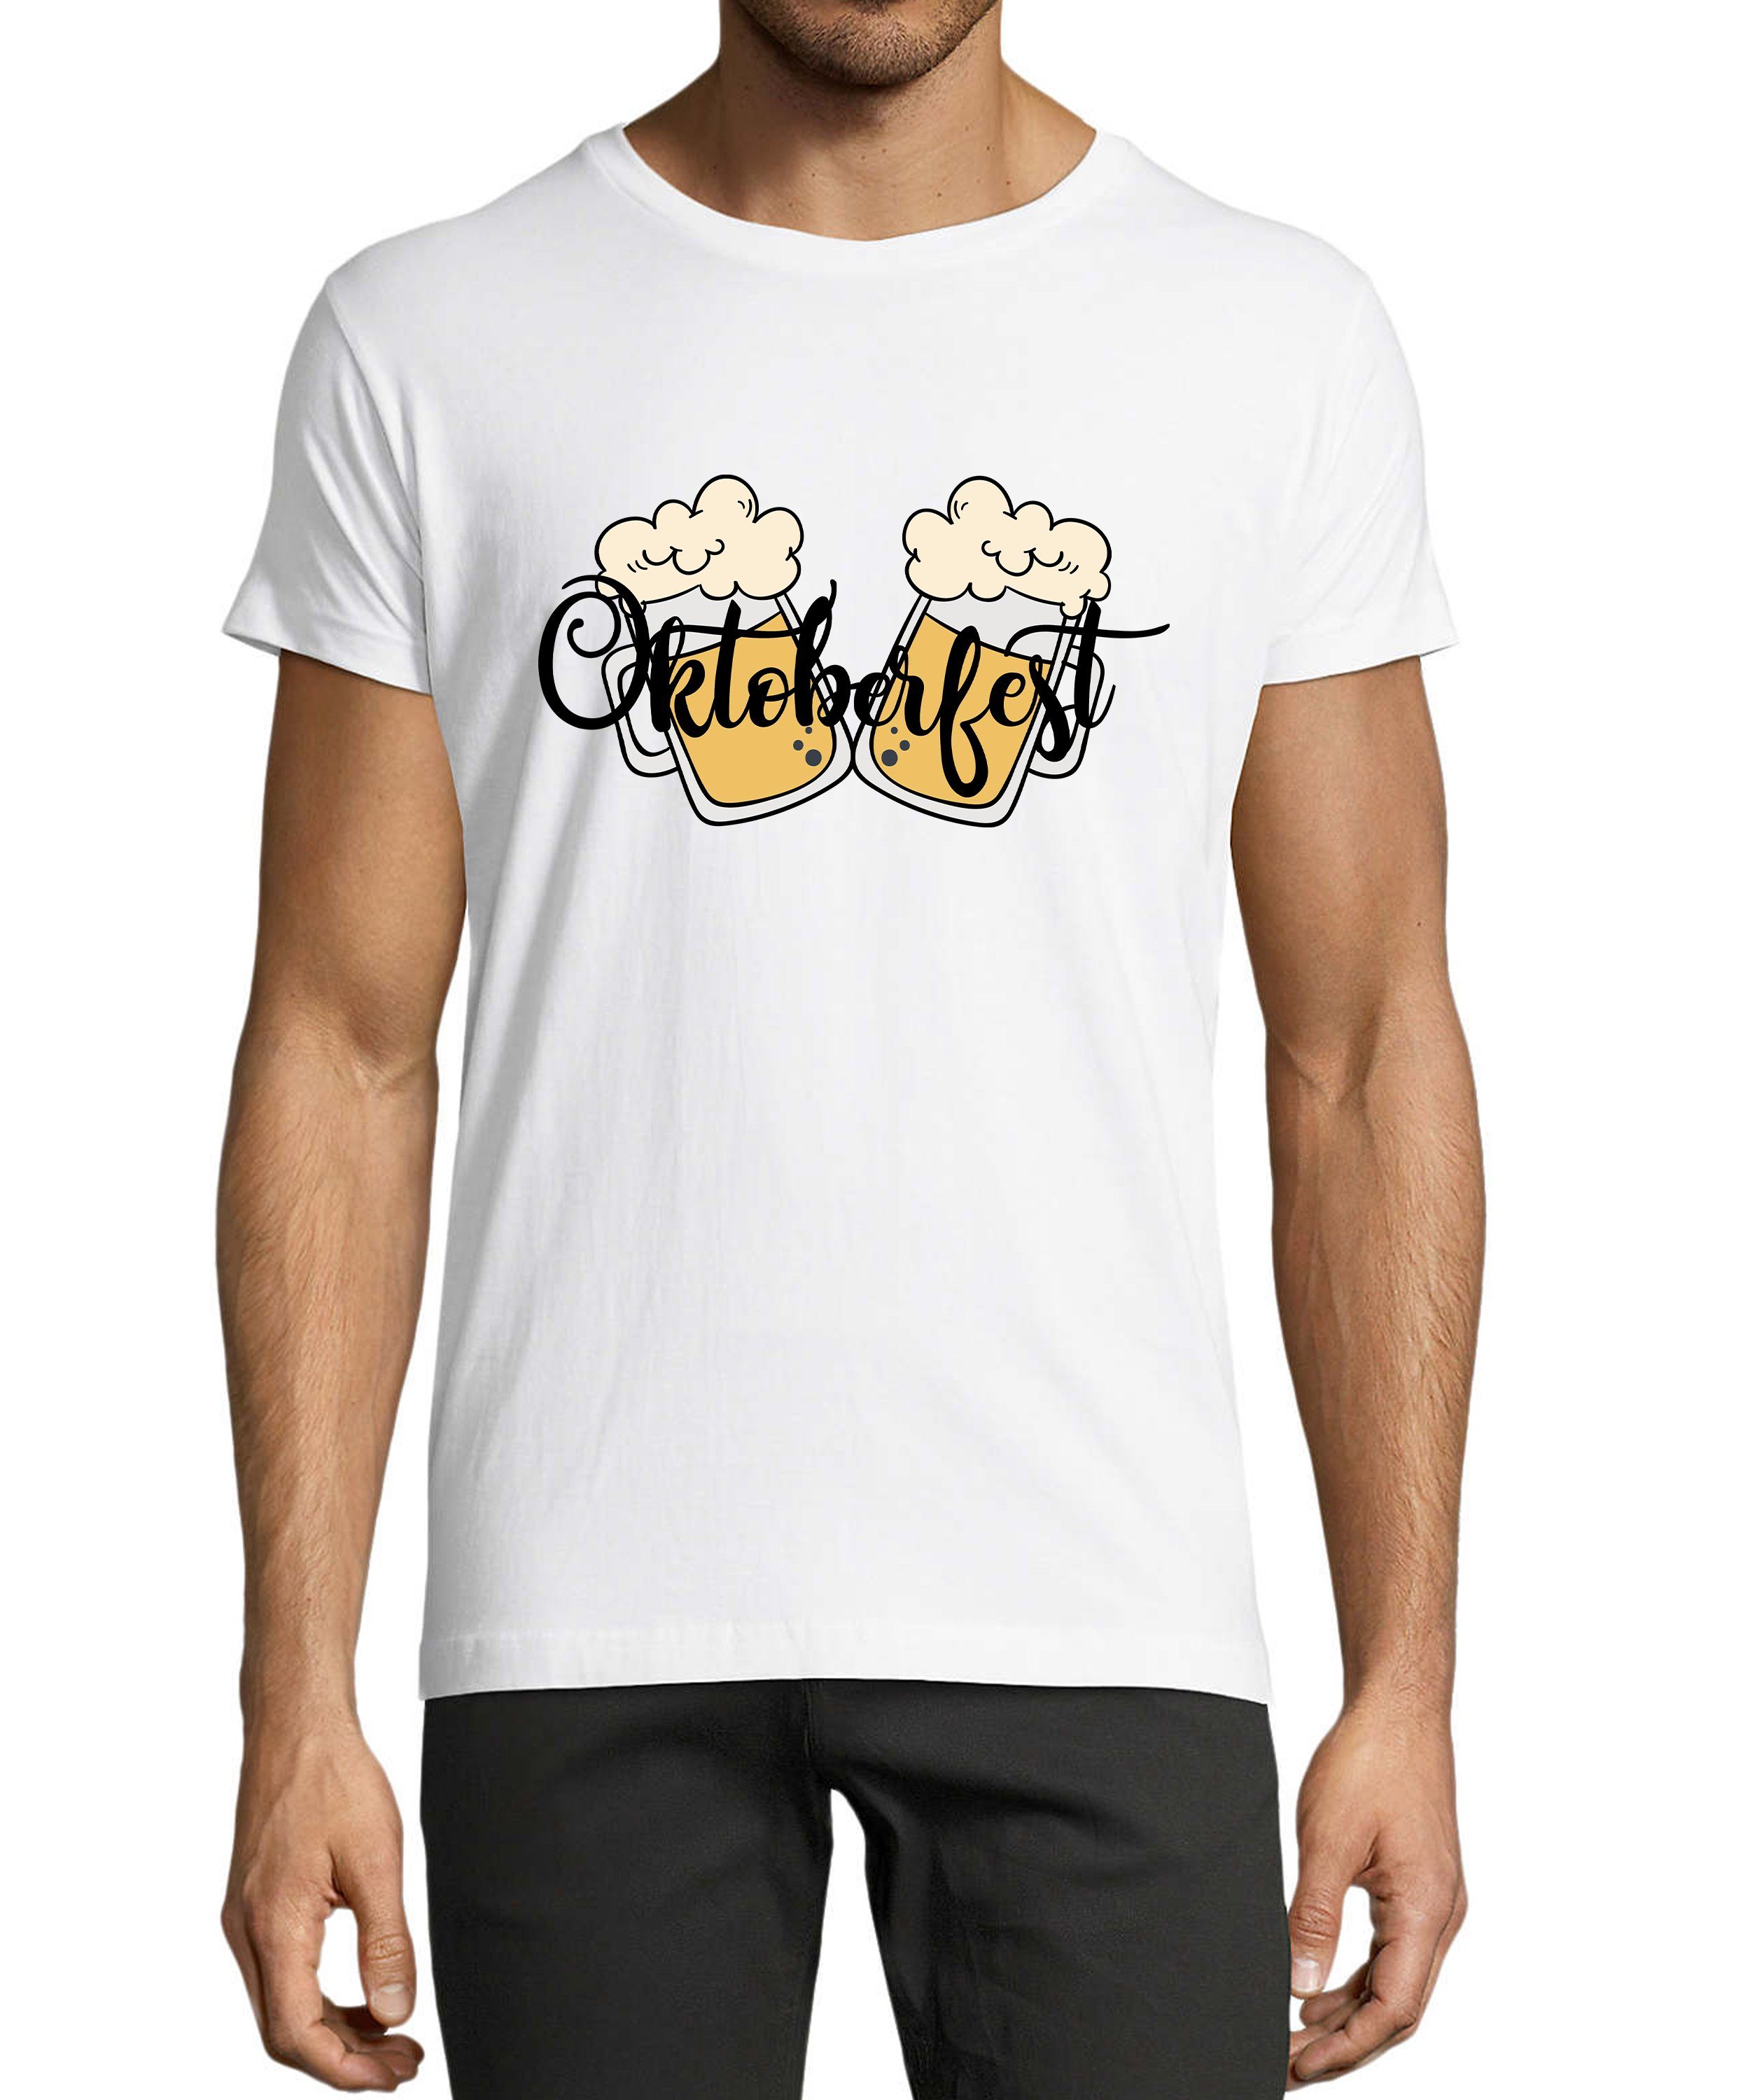 MyDesign24 T-Shirt Herren Party Shirt - Trinkshirt Oktoberfest T-Shirt 2 Biergläser Baumwollshirt mit Aufdruck Regular Fit, i326 weiss